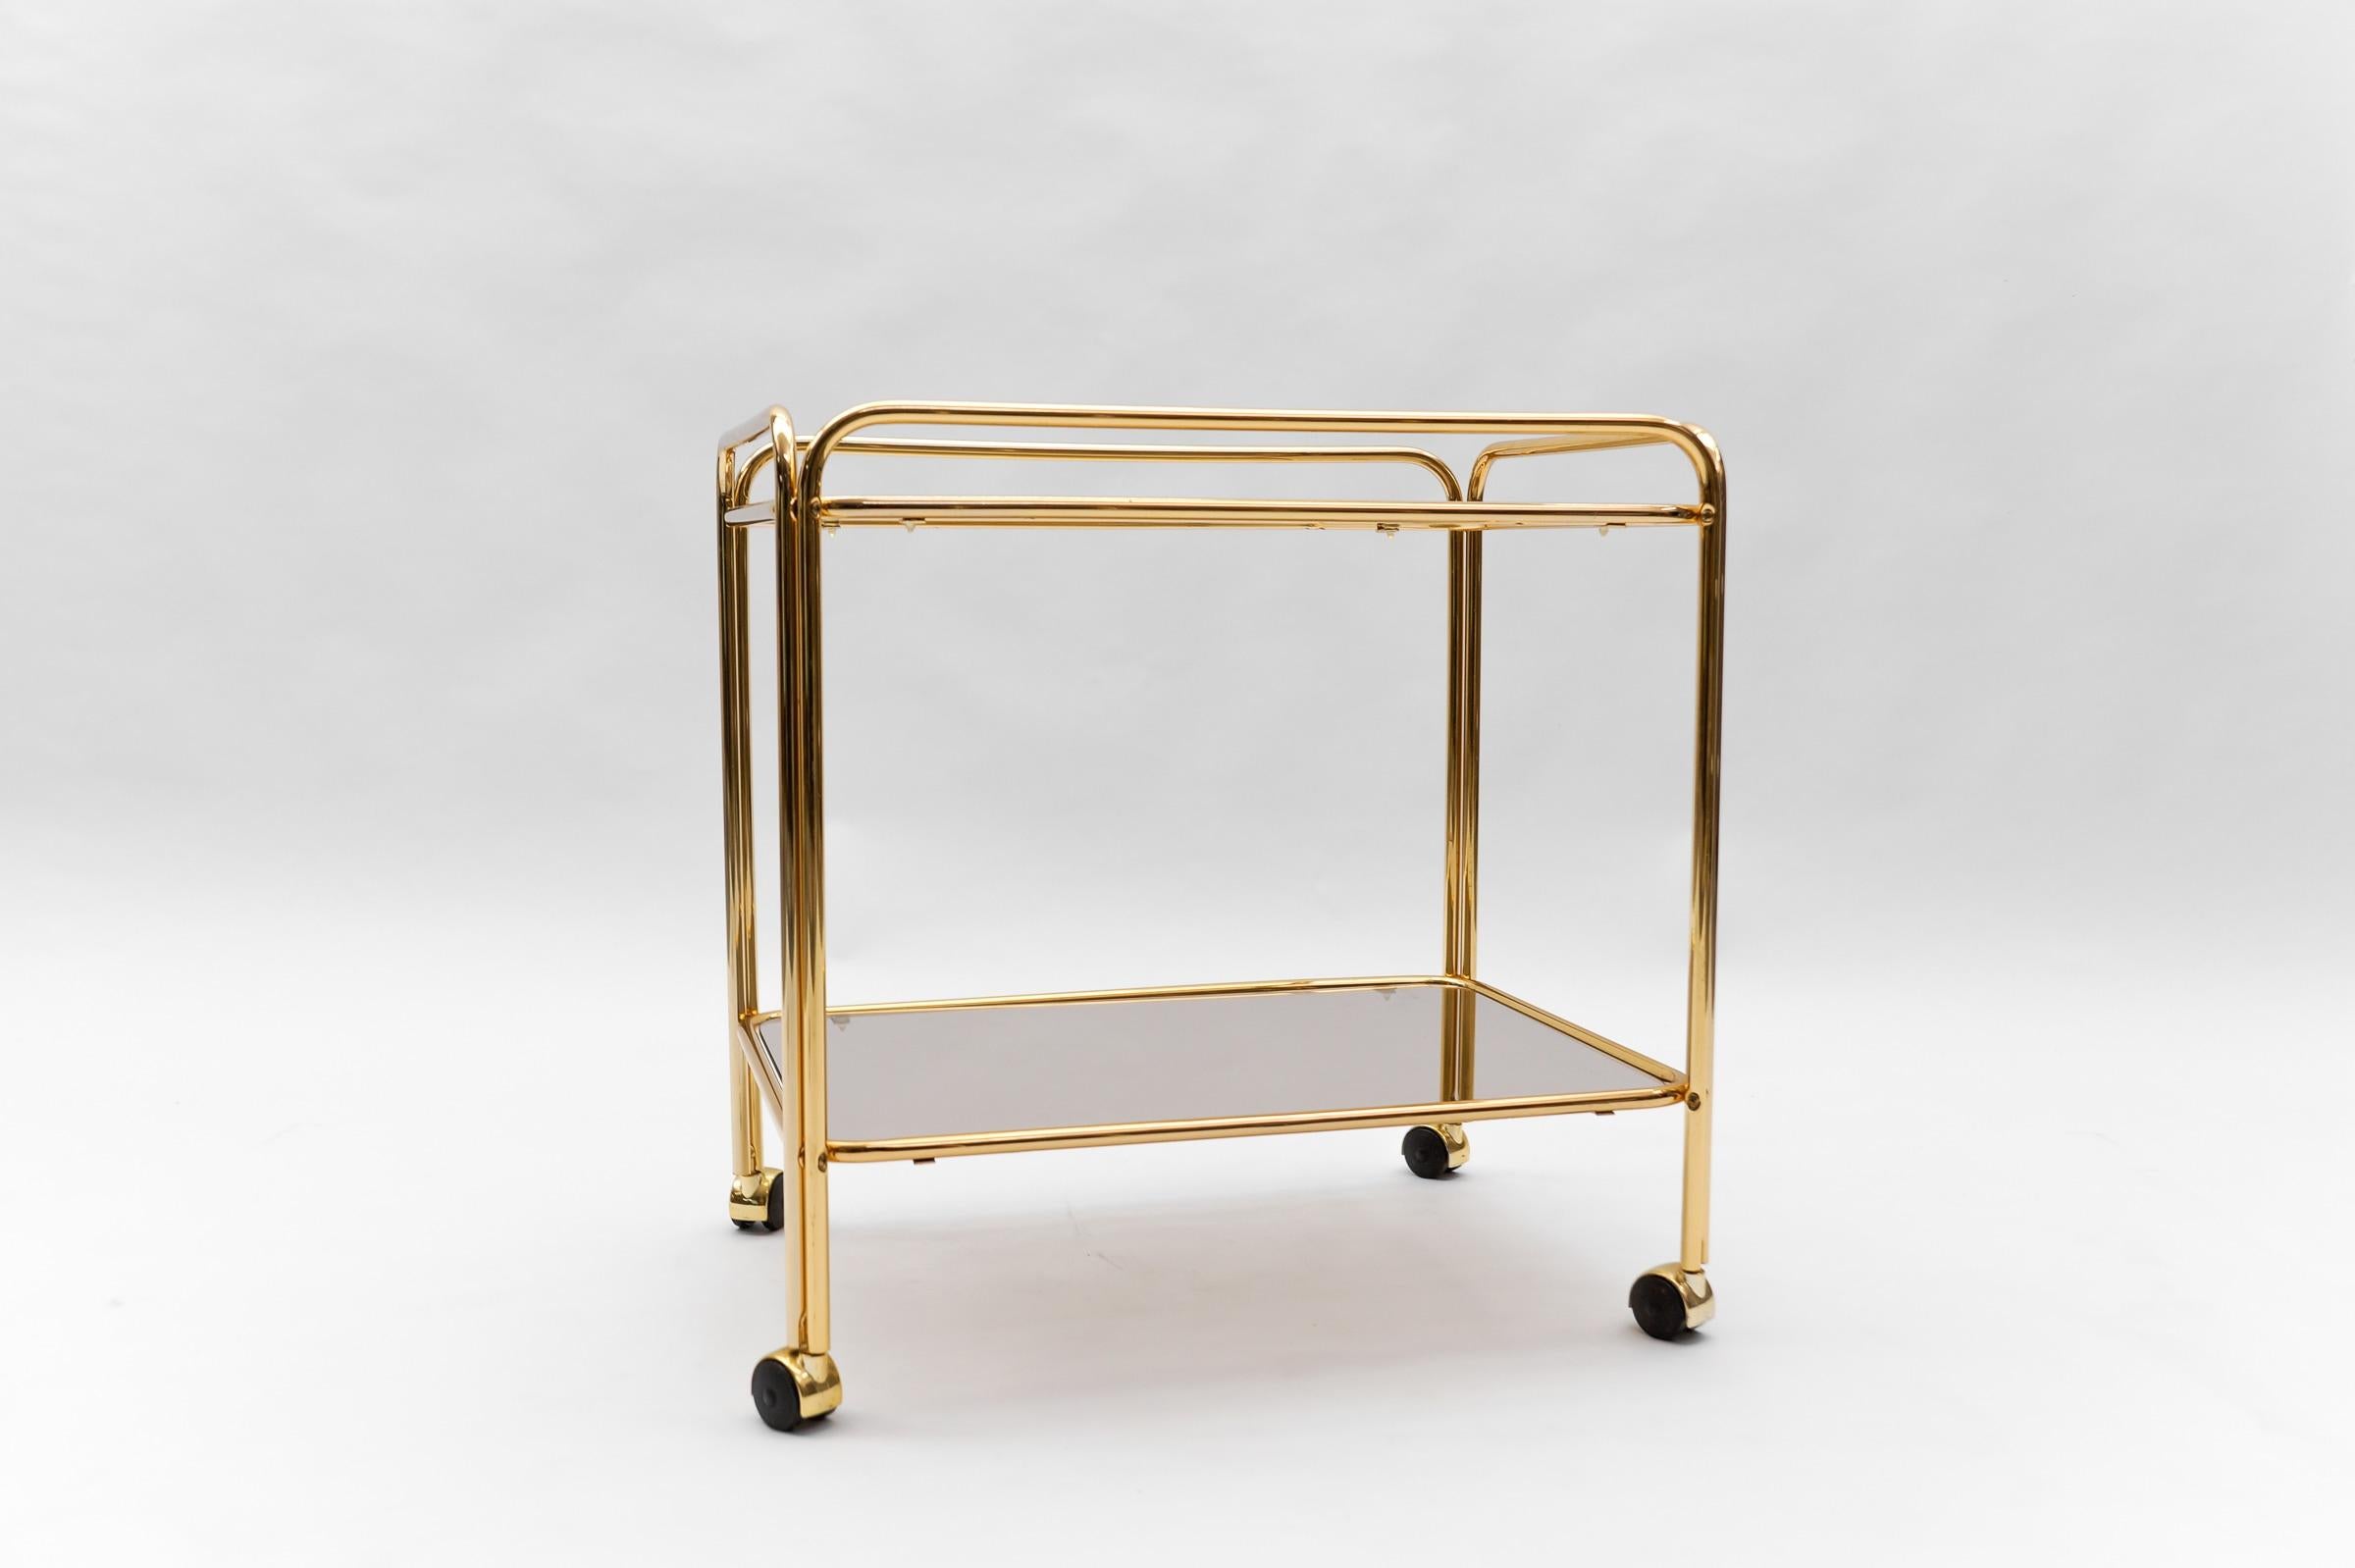  Lovely Elegant Mid-Century Modern Brass Bar Cart, 1960s, France For Sale 4